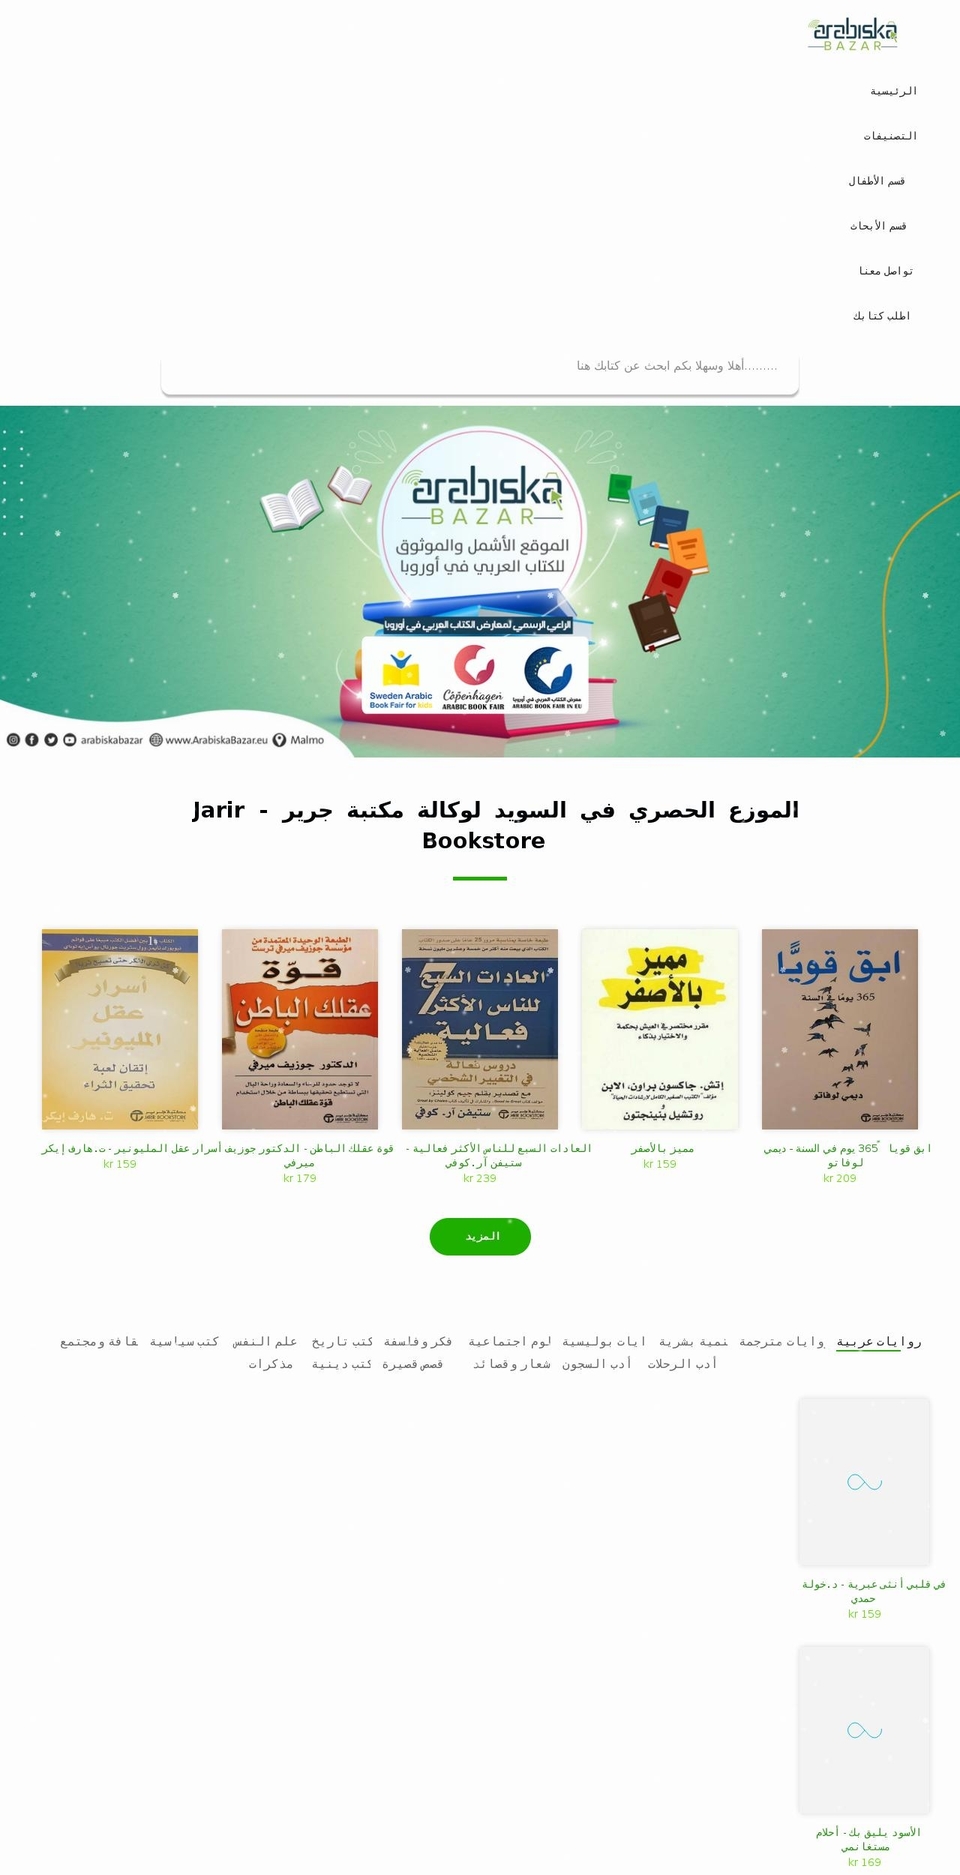 arabiskabazar.se shopify website screenshot